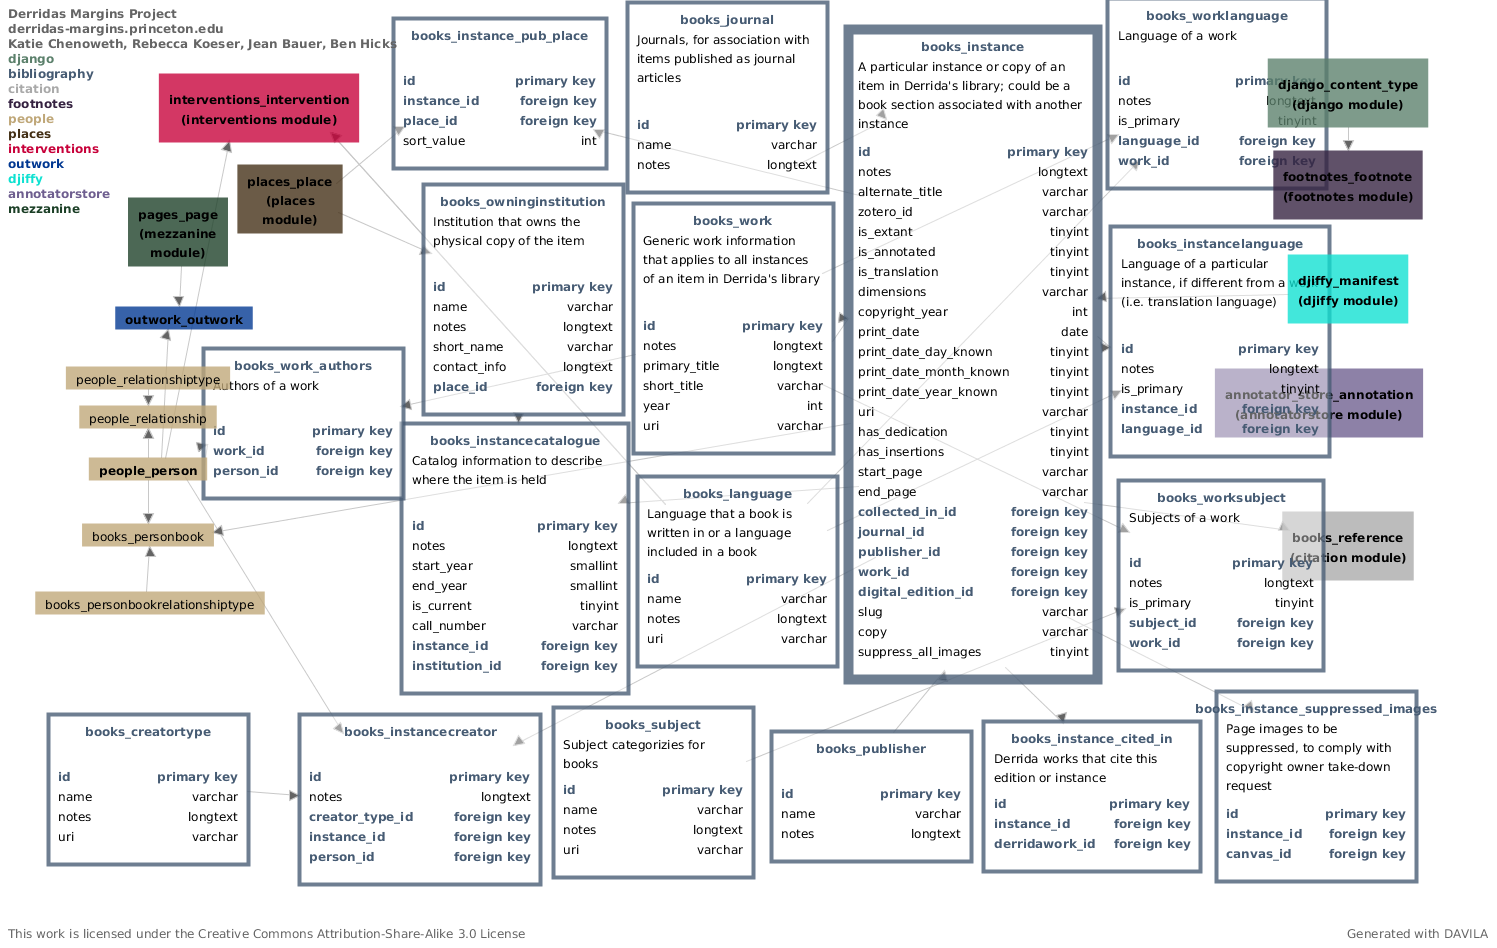 Bibliography schema detail for Derrida 0.9